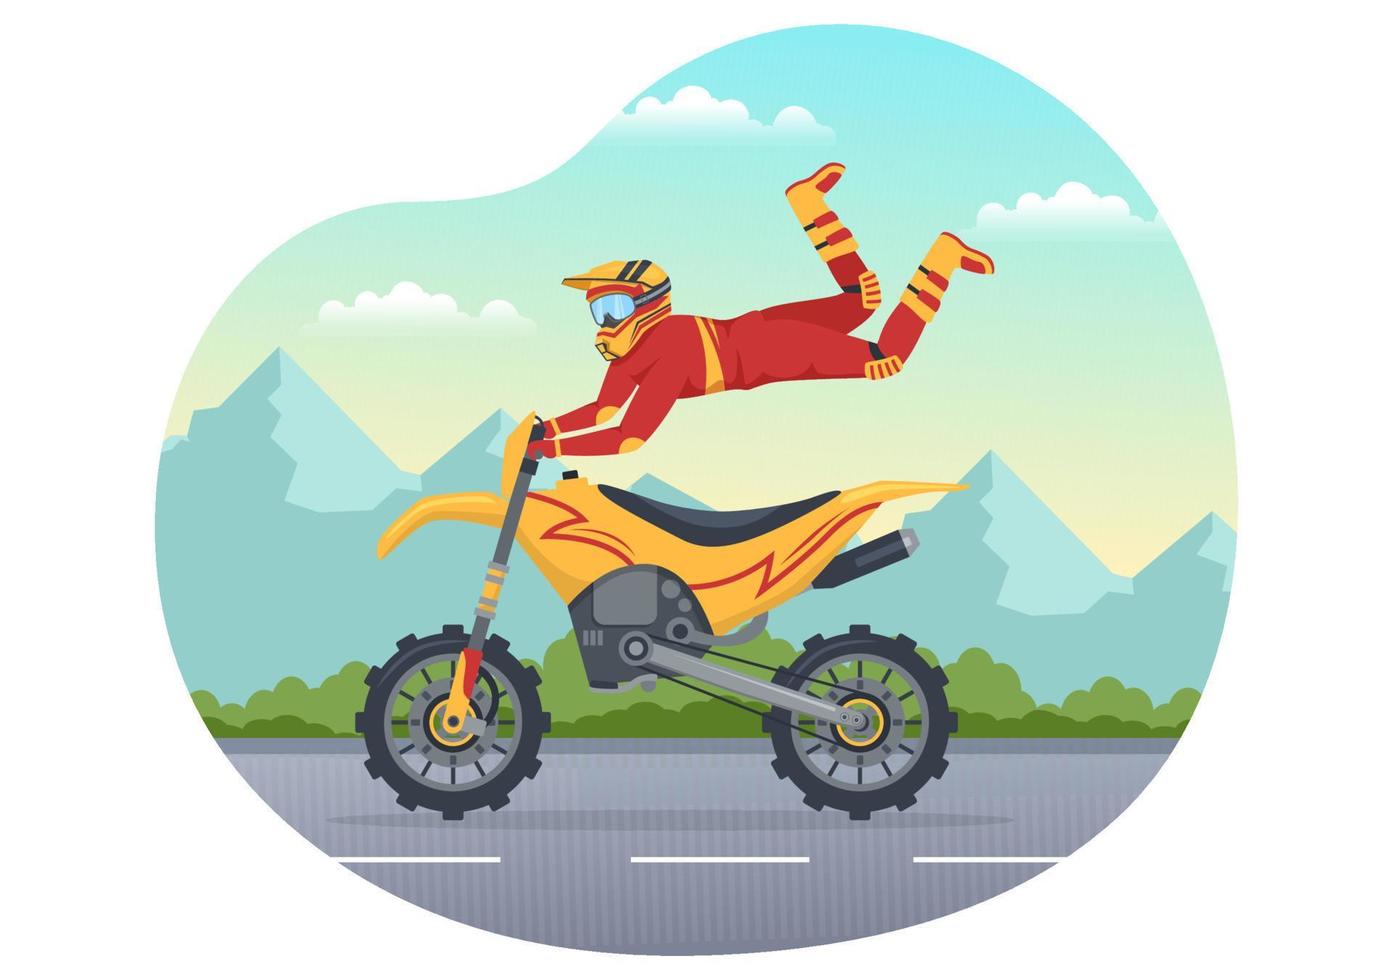 ilustração de motocross com um piloto andando de bicicleta pela lama, estradas rochosas e aventura em modelo desenhado à mão de desenho animado plano de esporte radical vetor